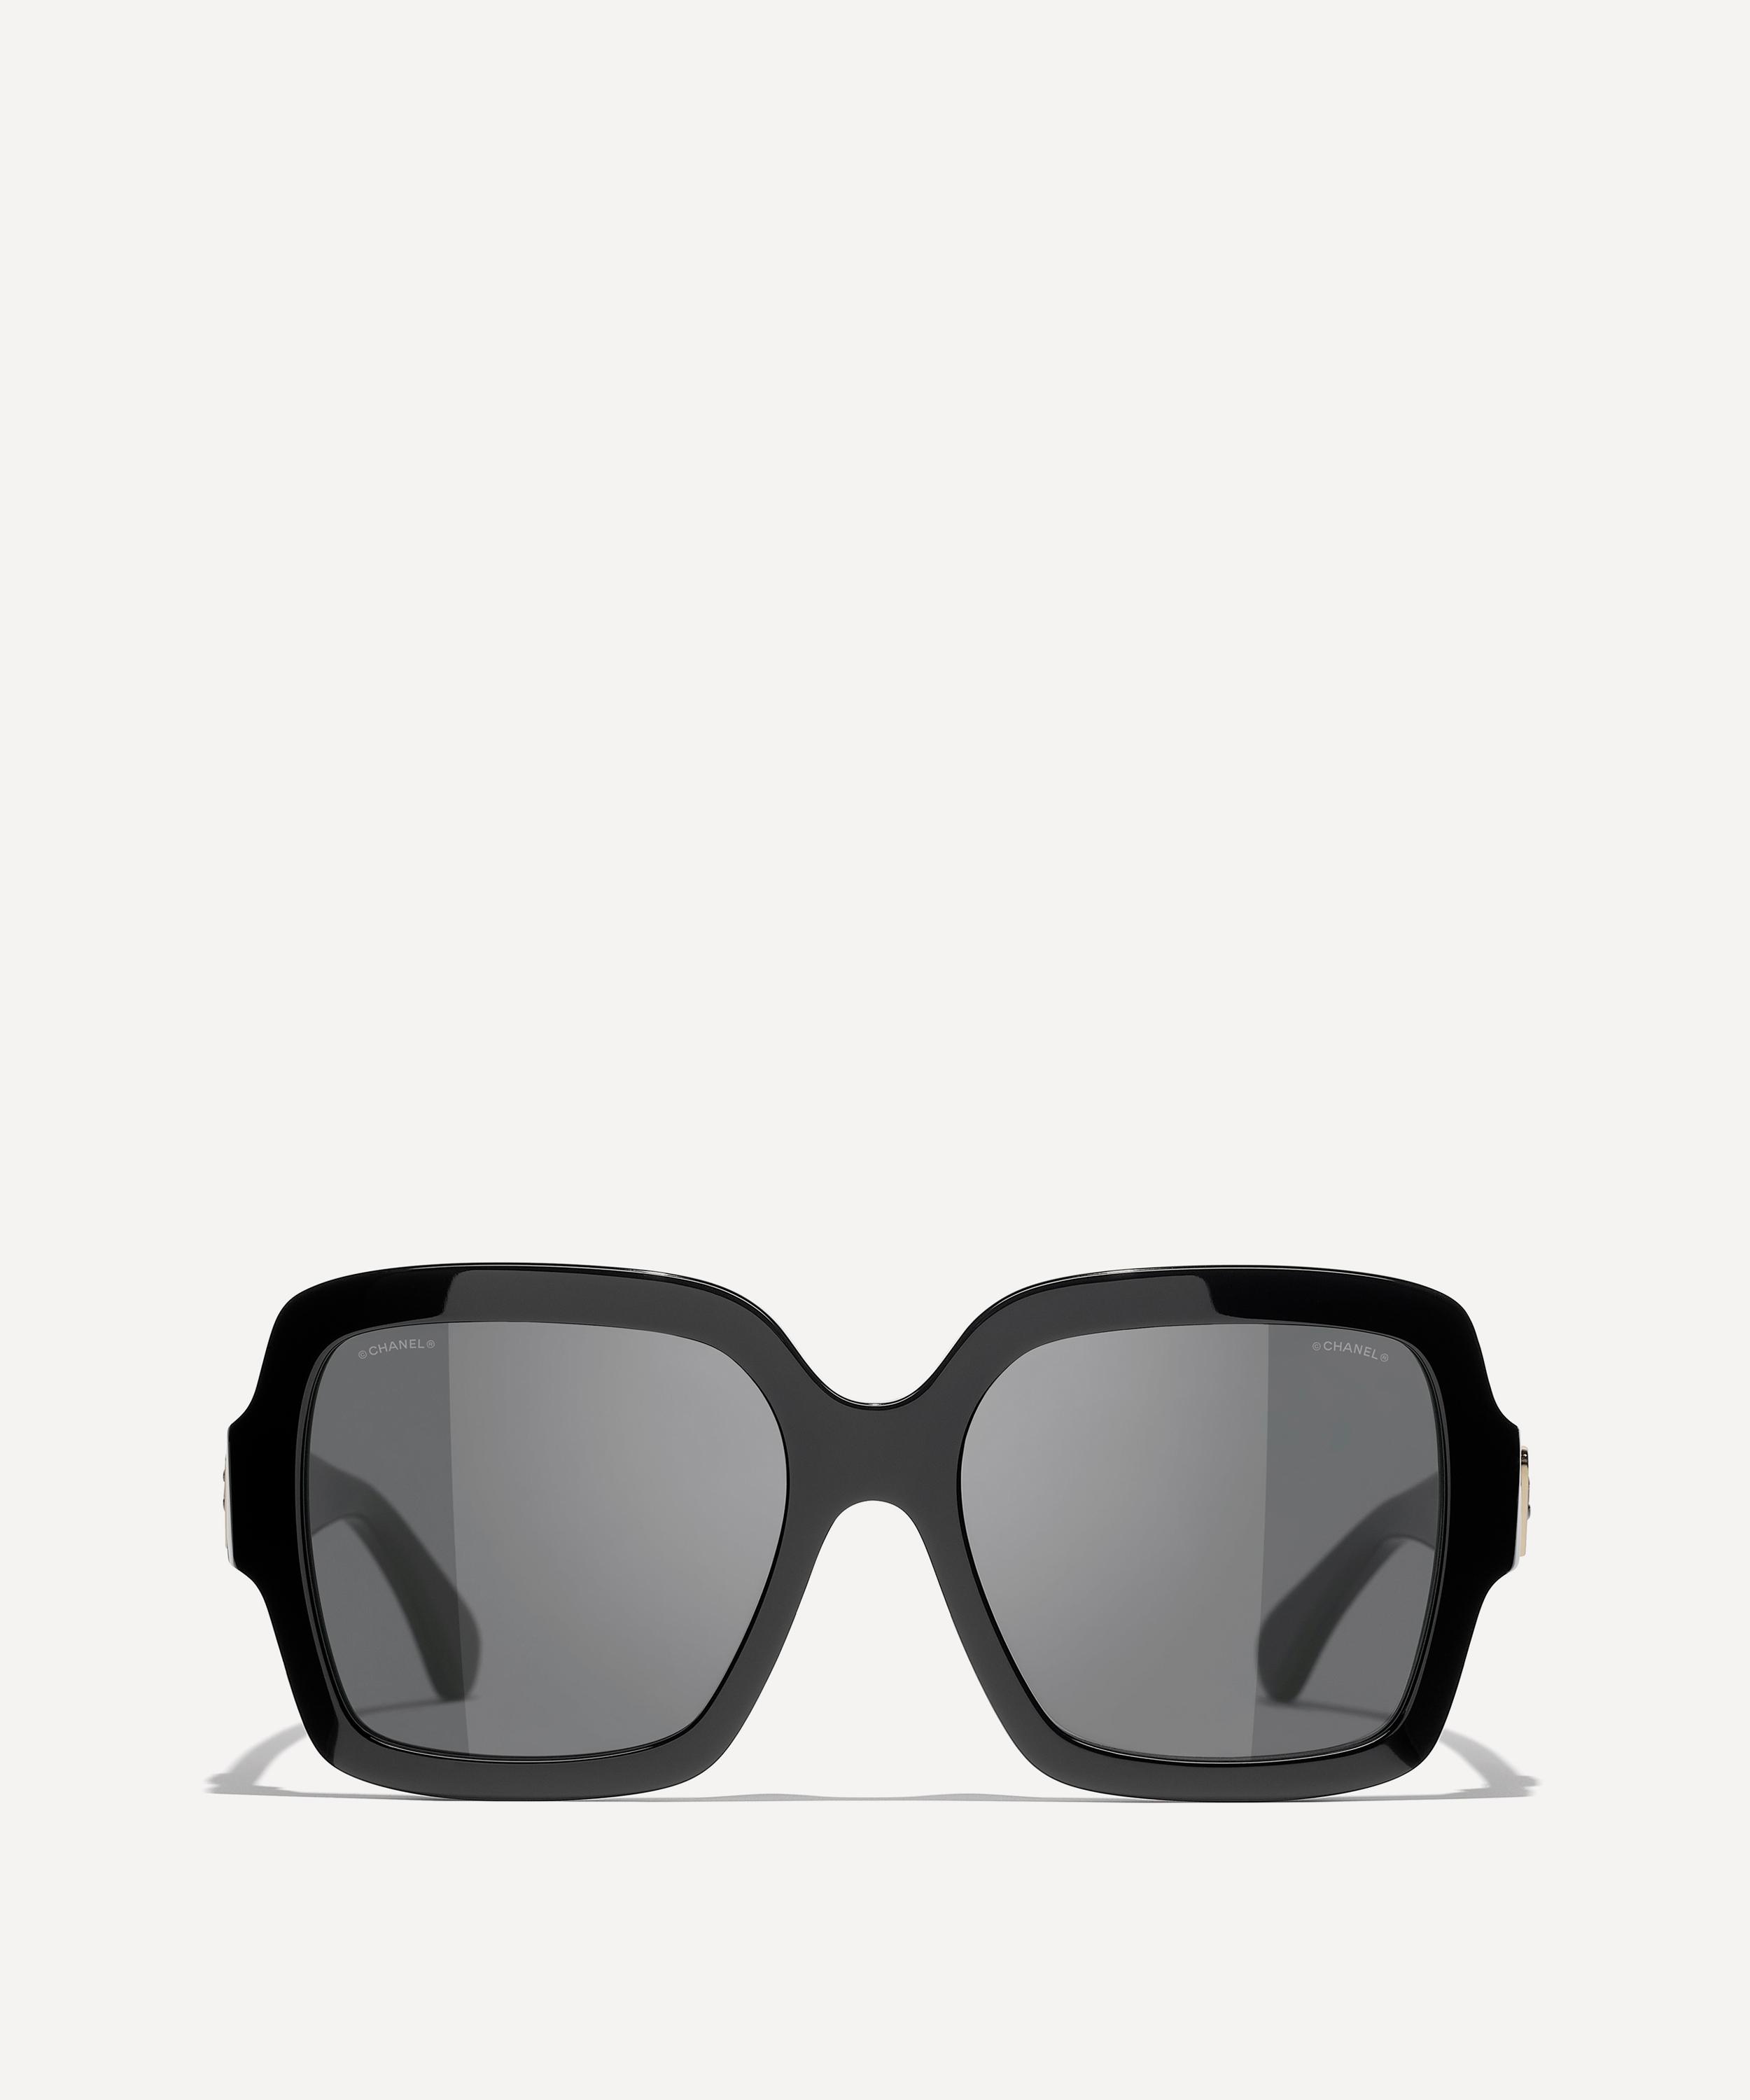 Chanel 5506 Sunglasses (Black/Grey - Square - Women)